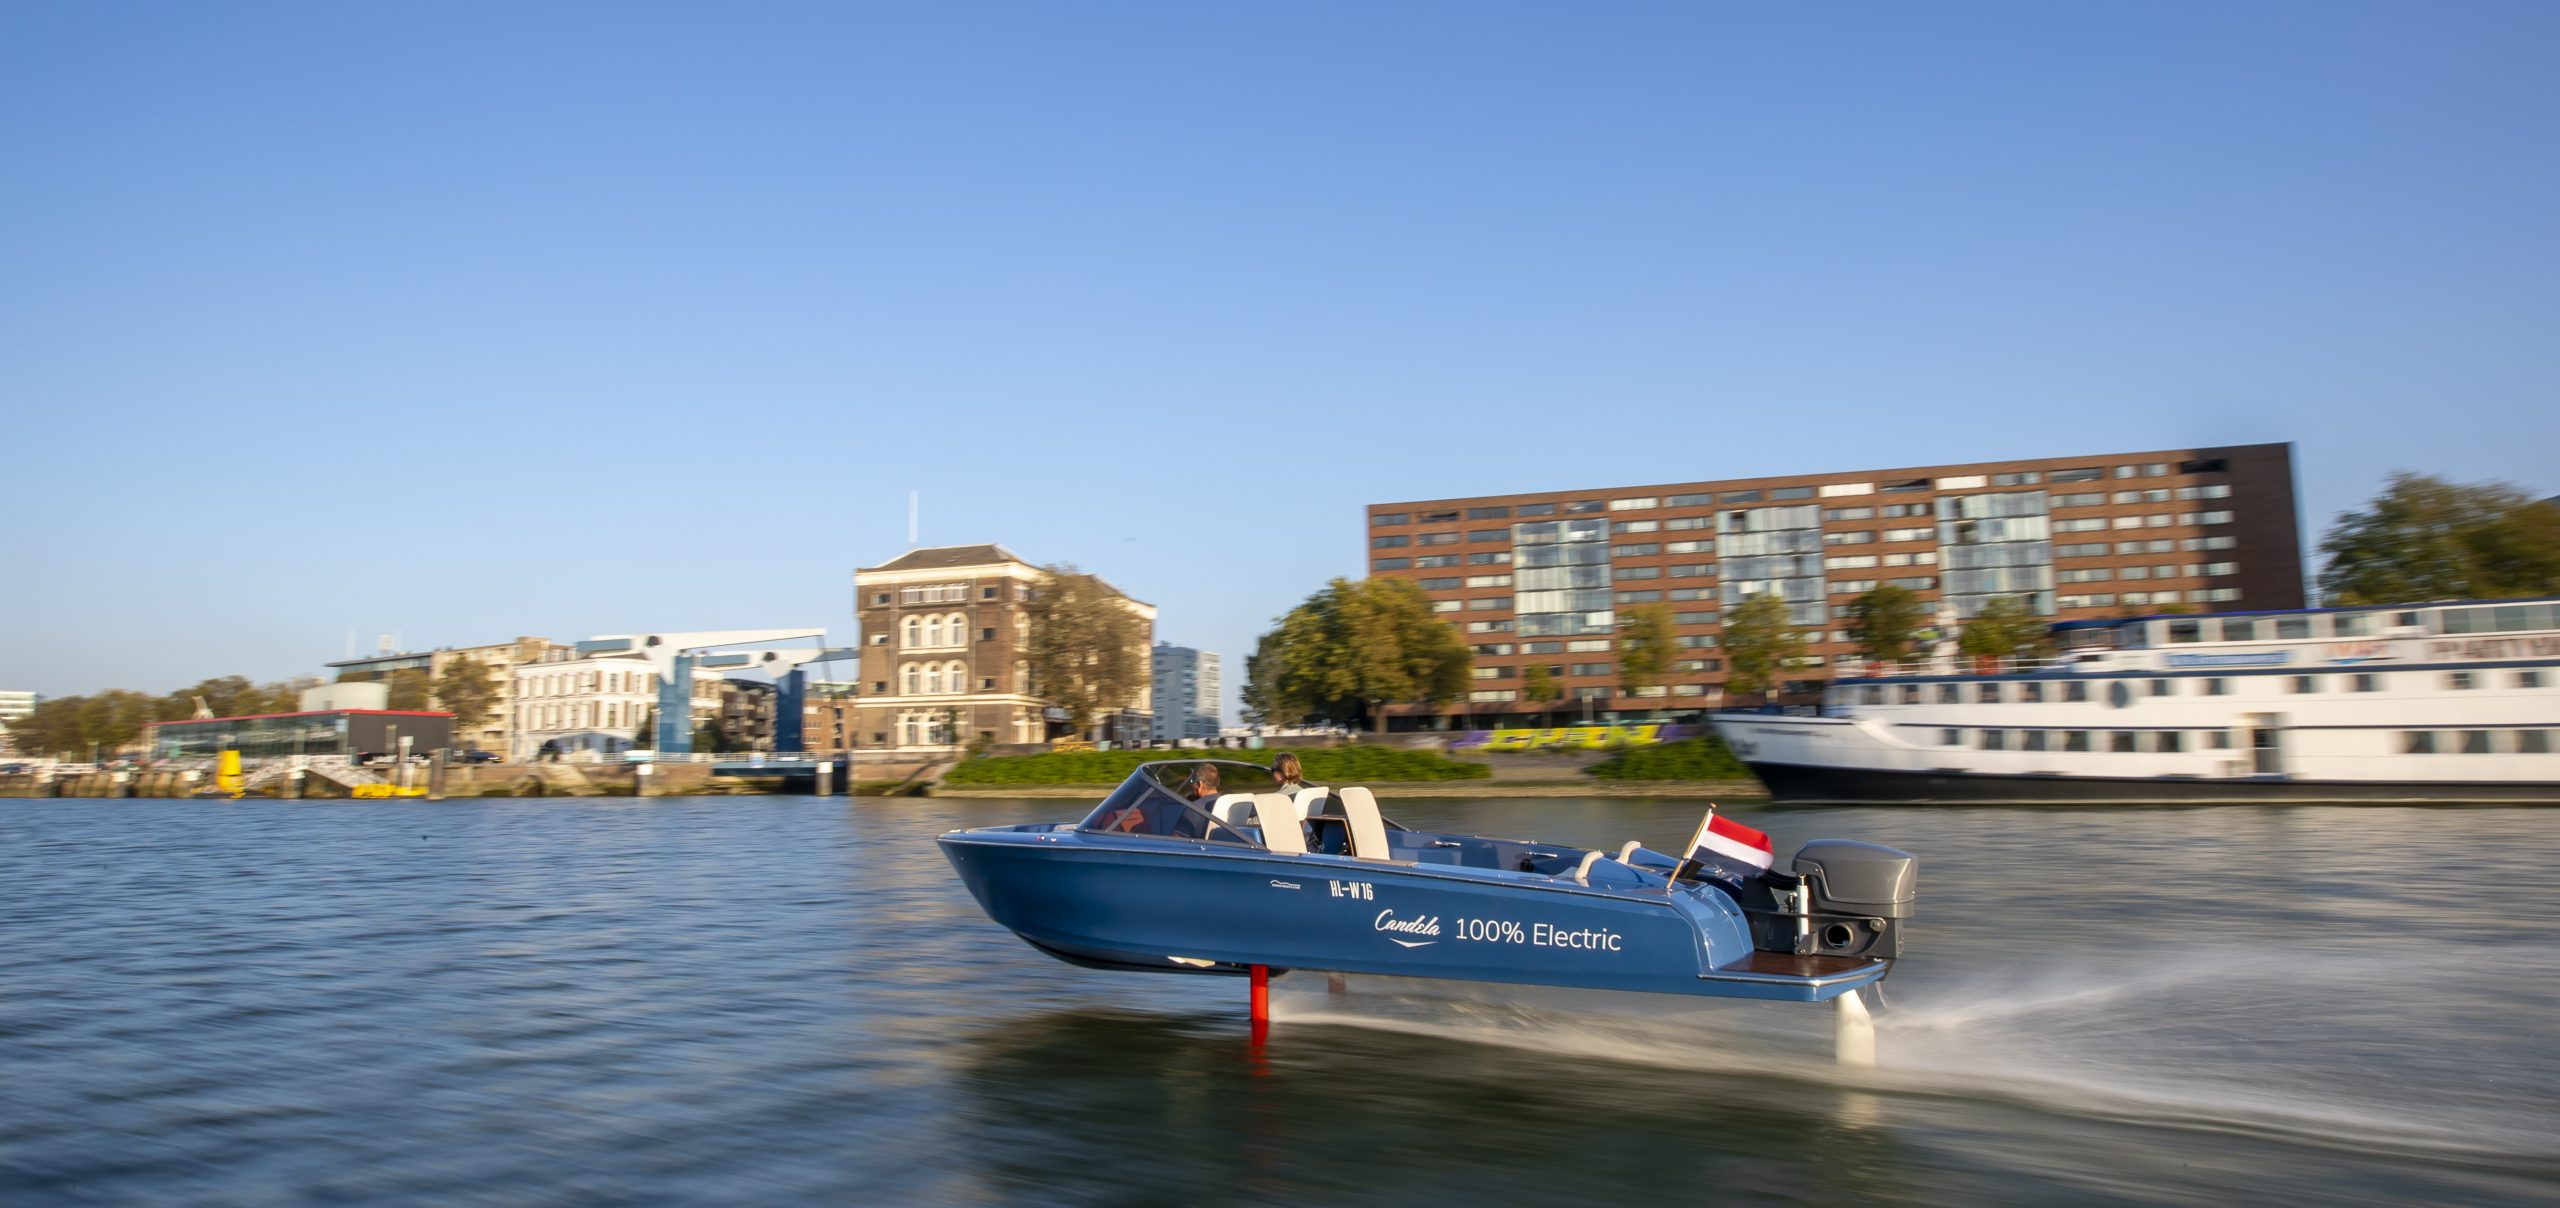 De Candela P-7 voer al eens door Amsterdam. (Foto Sander van der Borch / Energyboats.com)